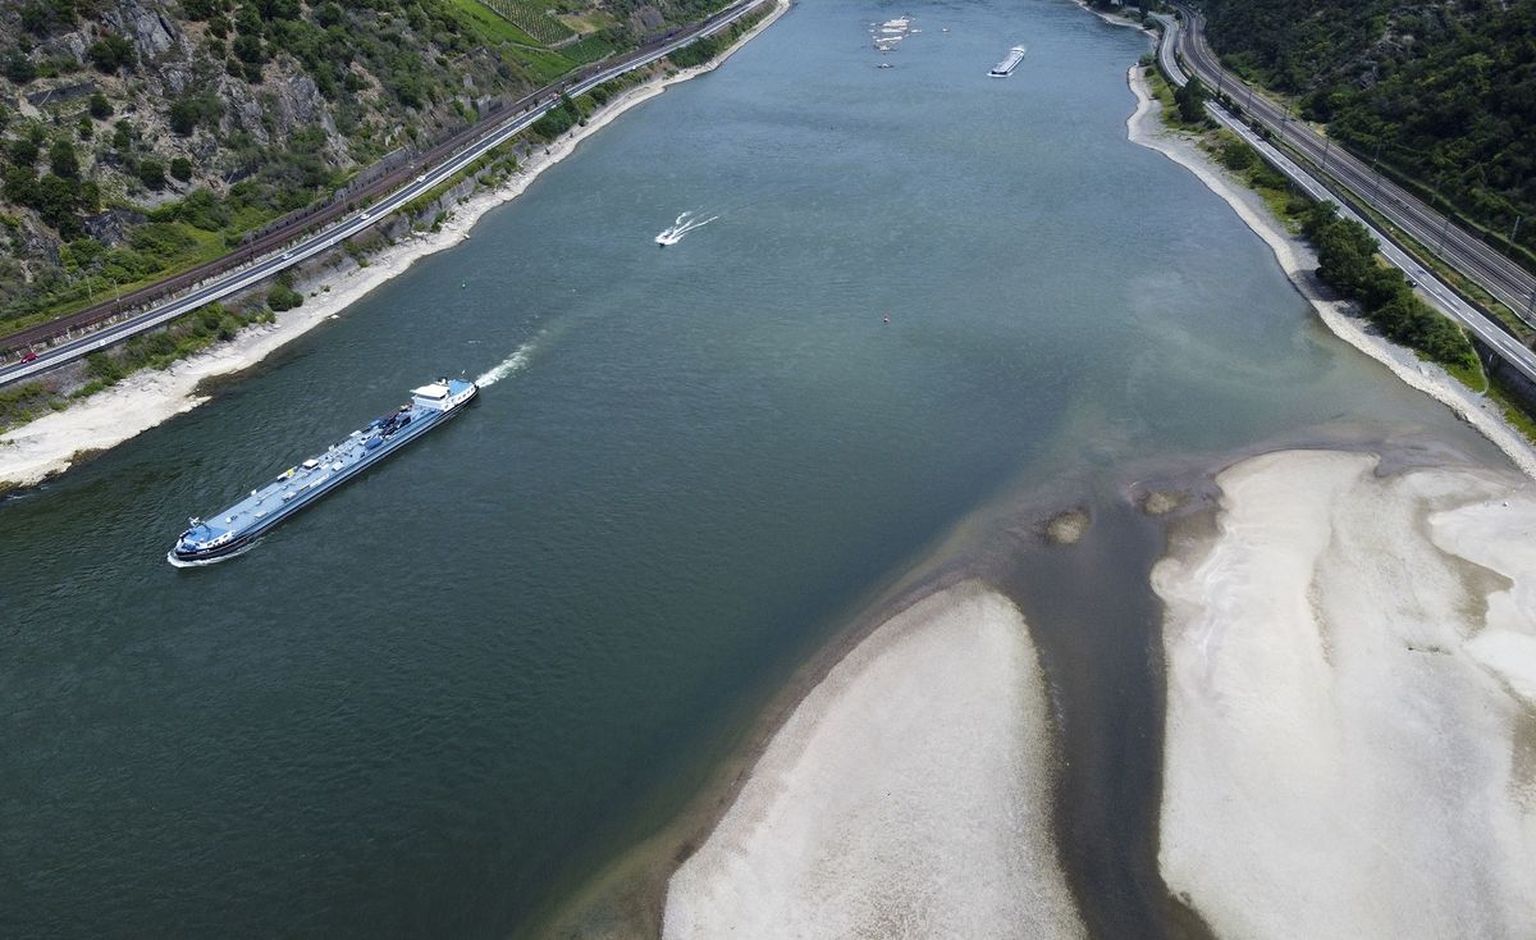 HULLUS SEISUS: Euroopa siseveeteede võrgustikus on Reini jõgi üks tähtsamaid lülisid. Käesoleval suvel on aga jõe veetase saavutanud kriitilise piiri, mis on järsult vähendanud laevaliikluse aktiivsust.